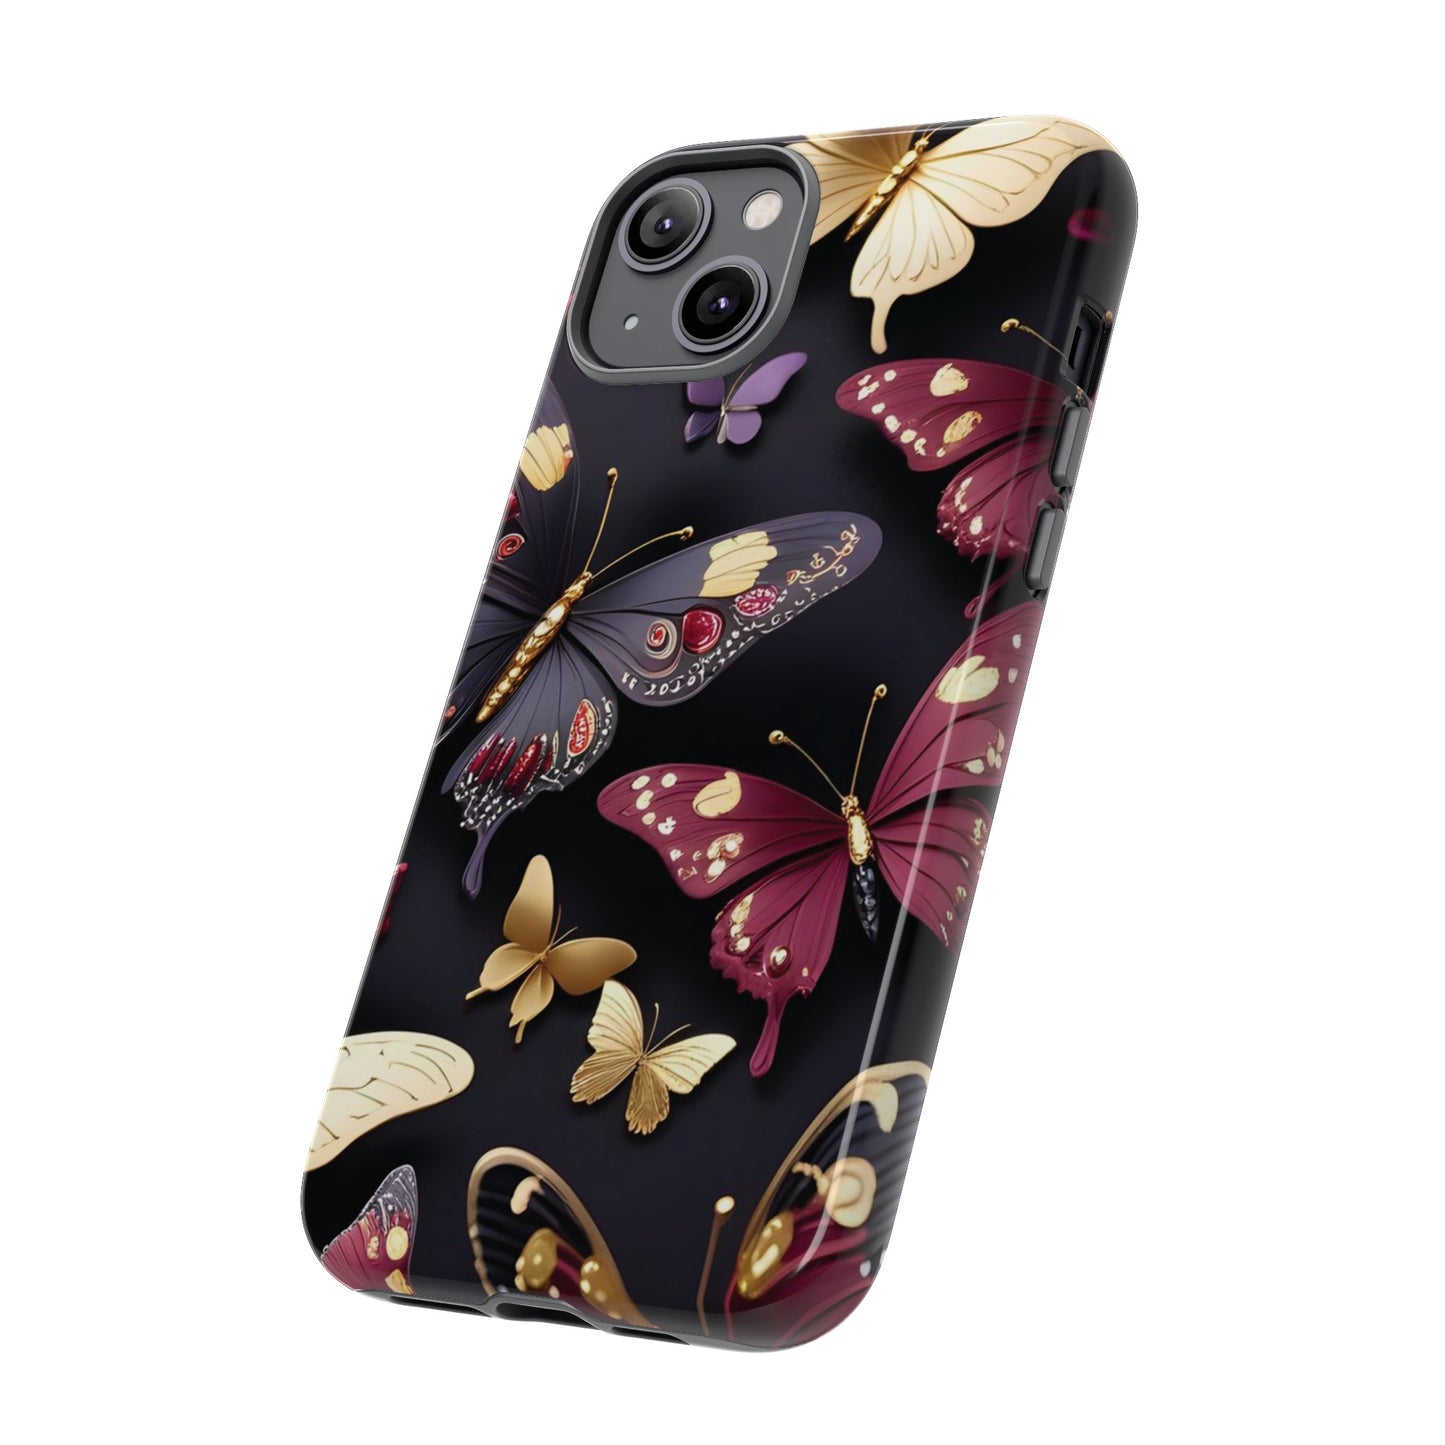 Butterflies design Tough Cases - iPhone Cases - Apple